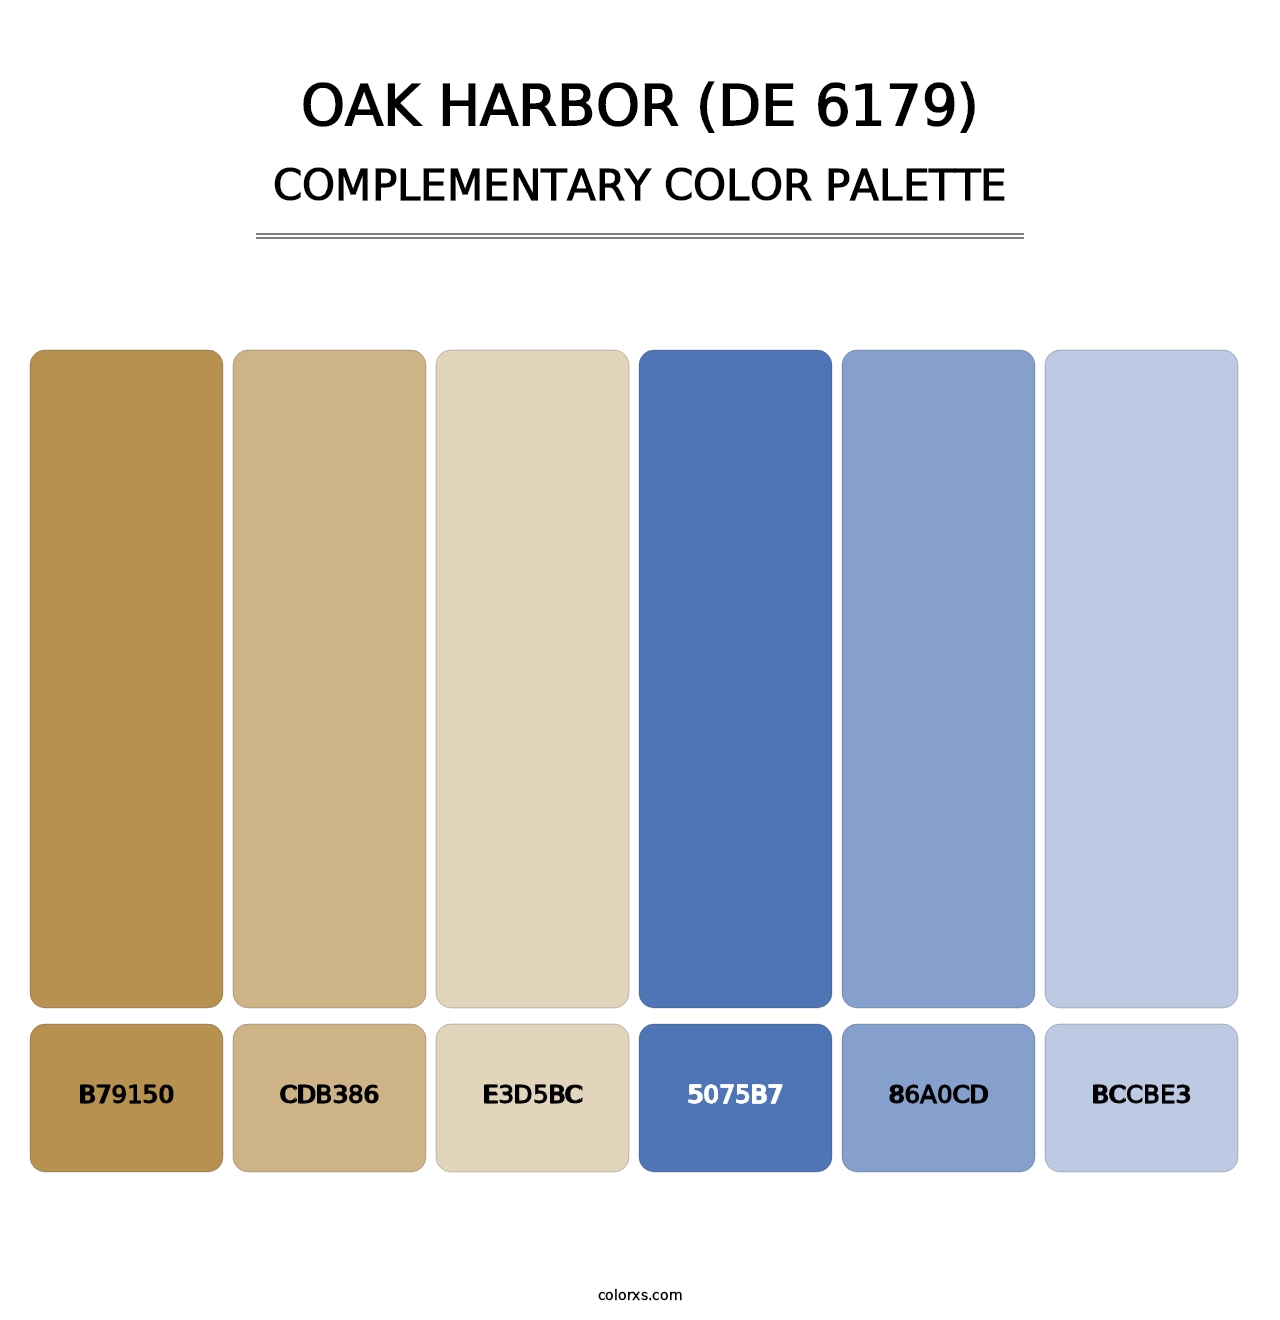 Oak Harbor (DE 6179) - Complementary Color Palette